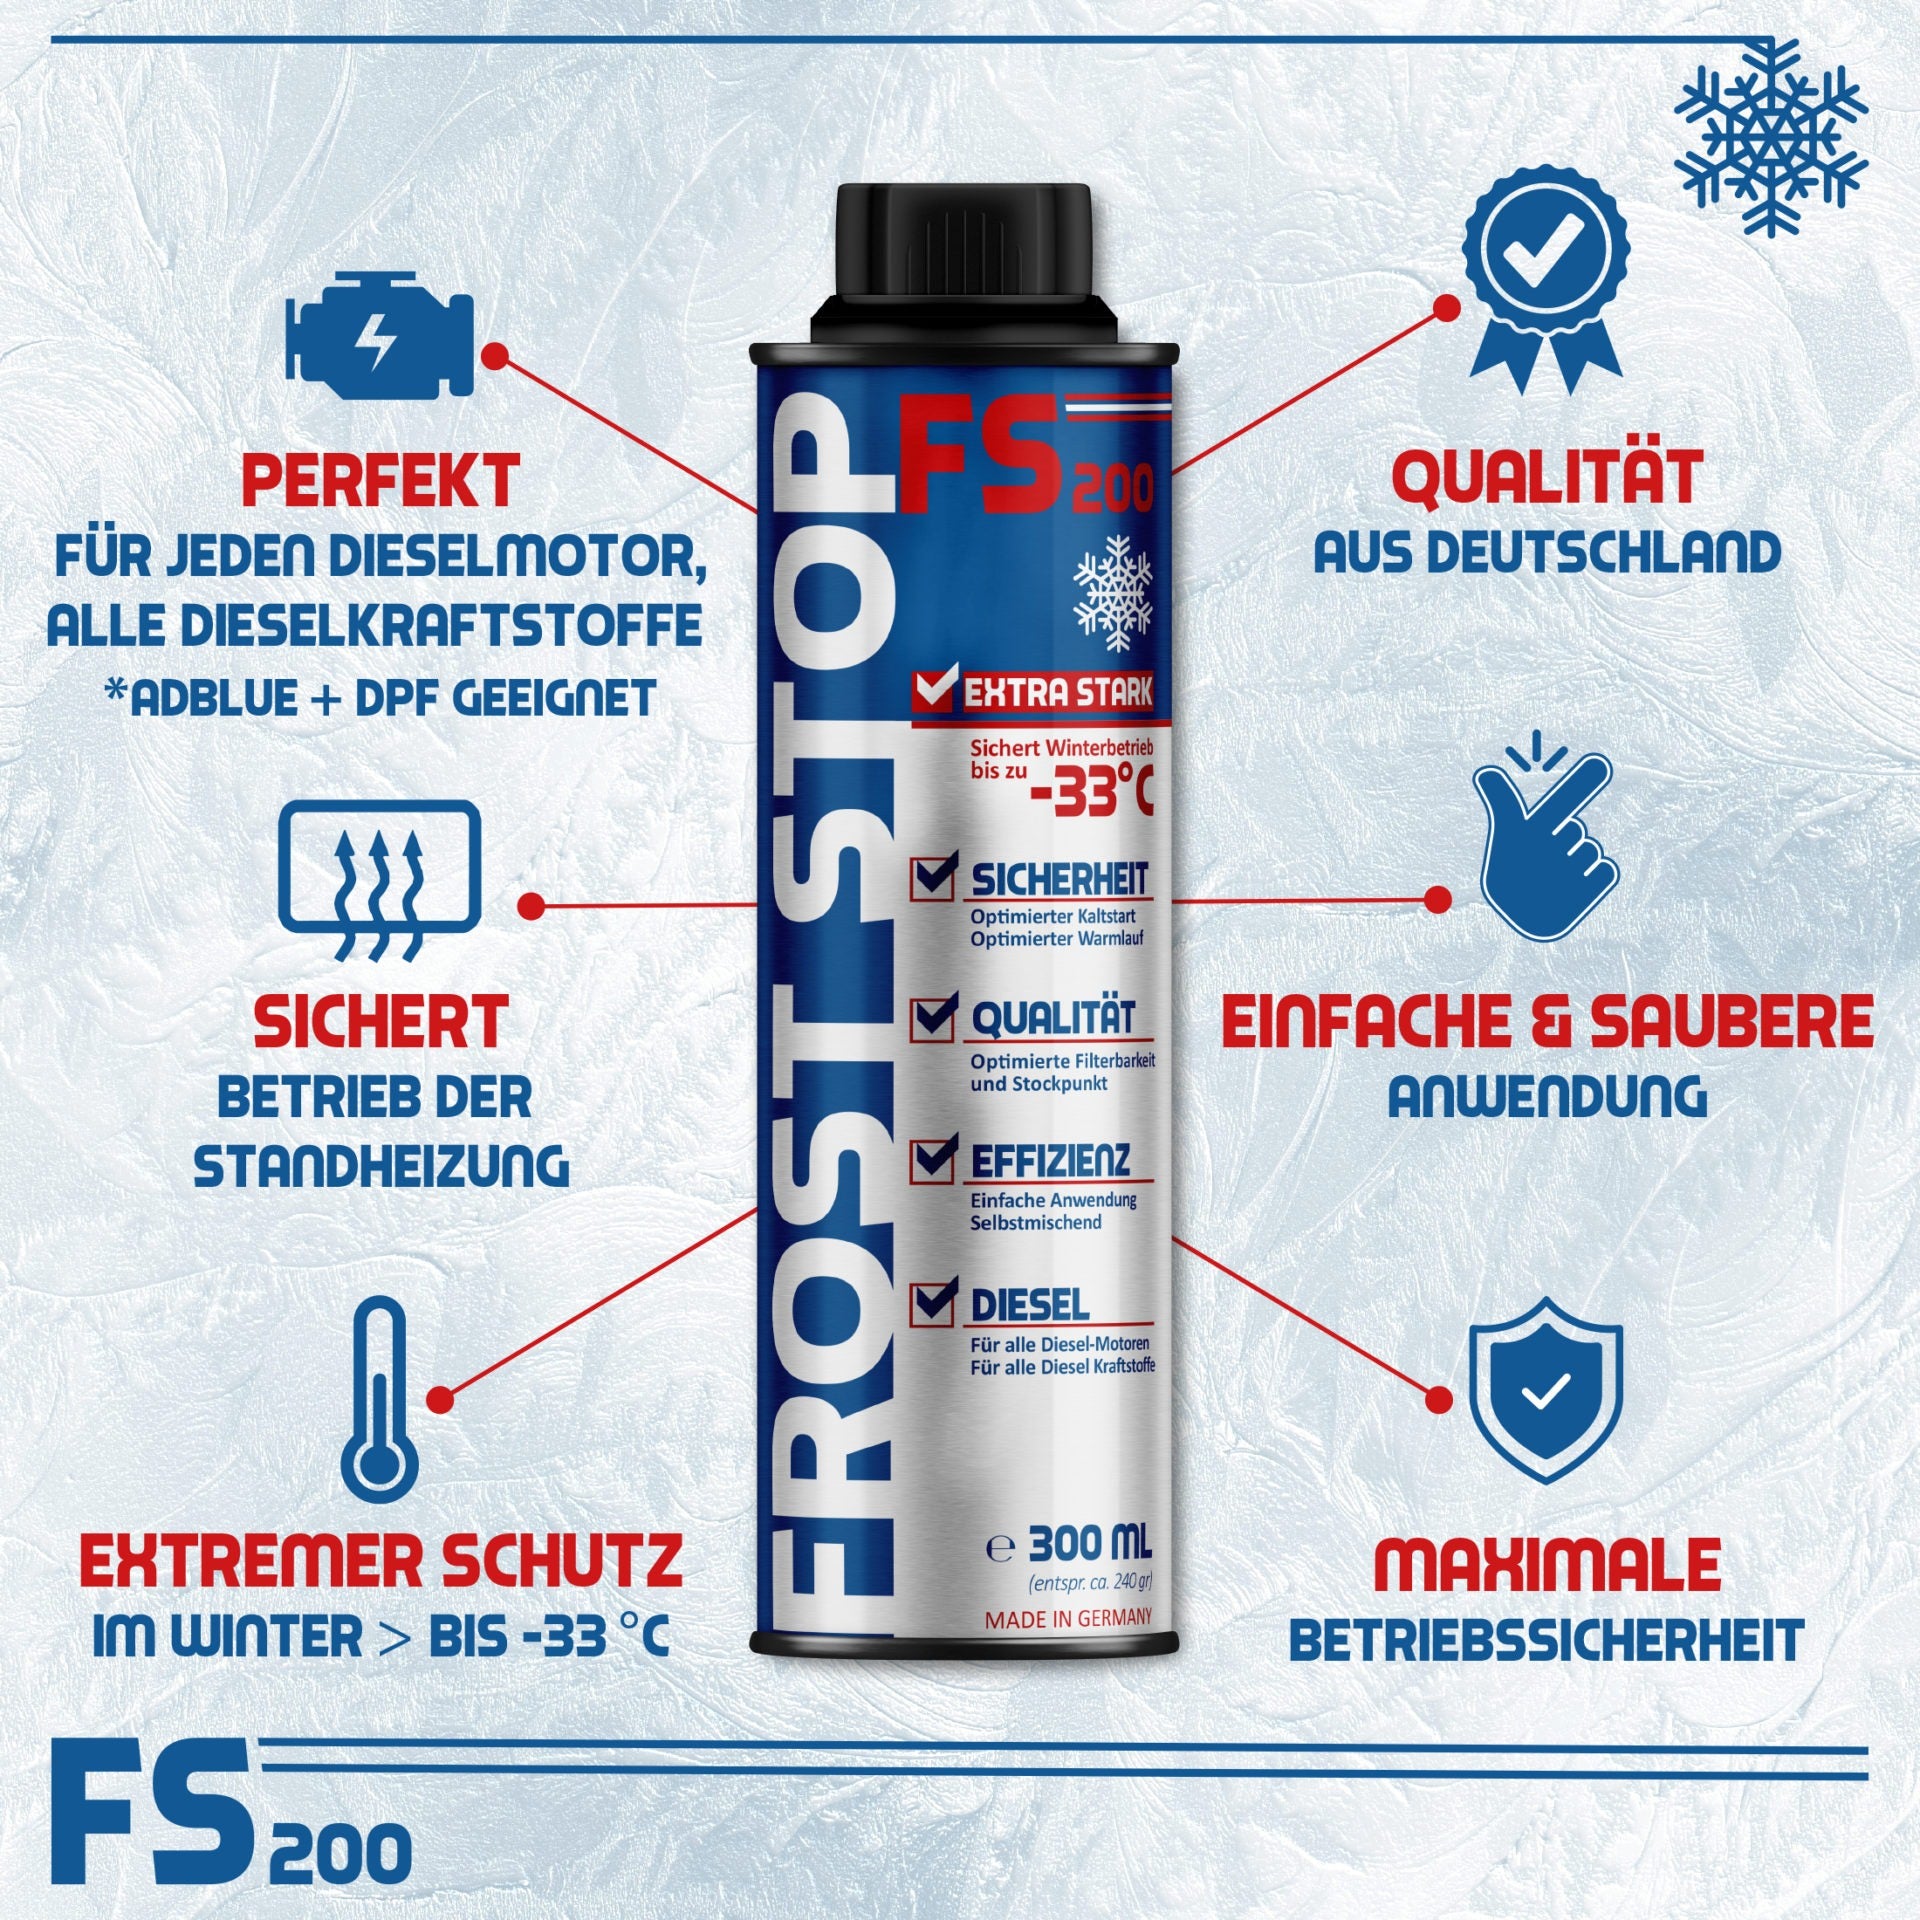 ORIGINAL SYPRIN Diesel Frost Stop - Diesel Frostschutz bis -33°C - syprin